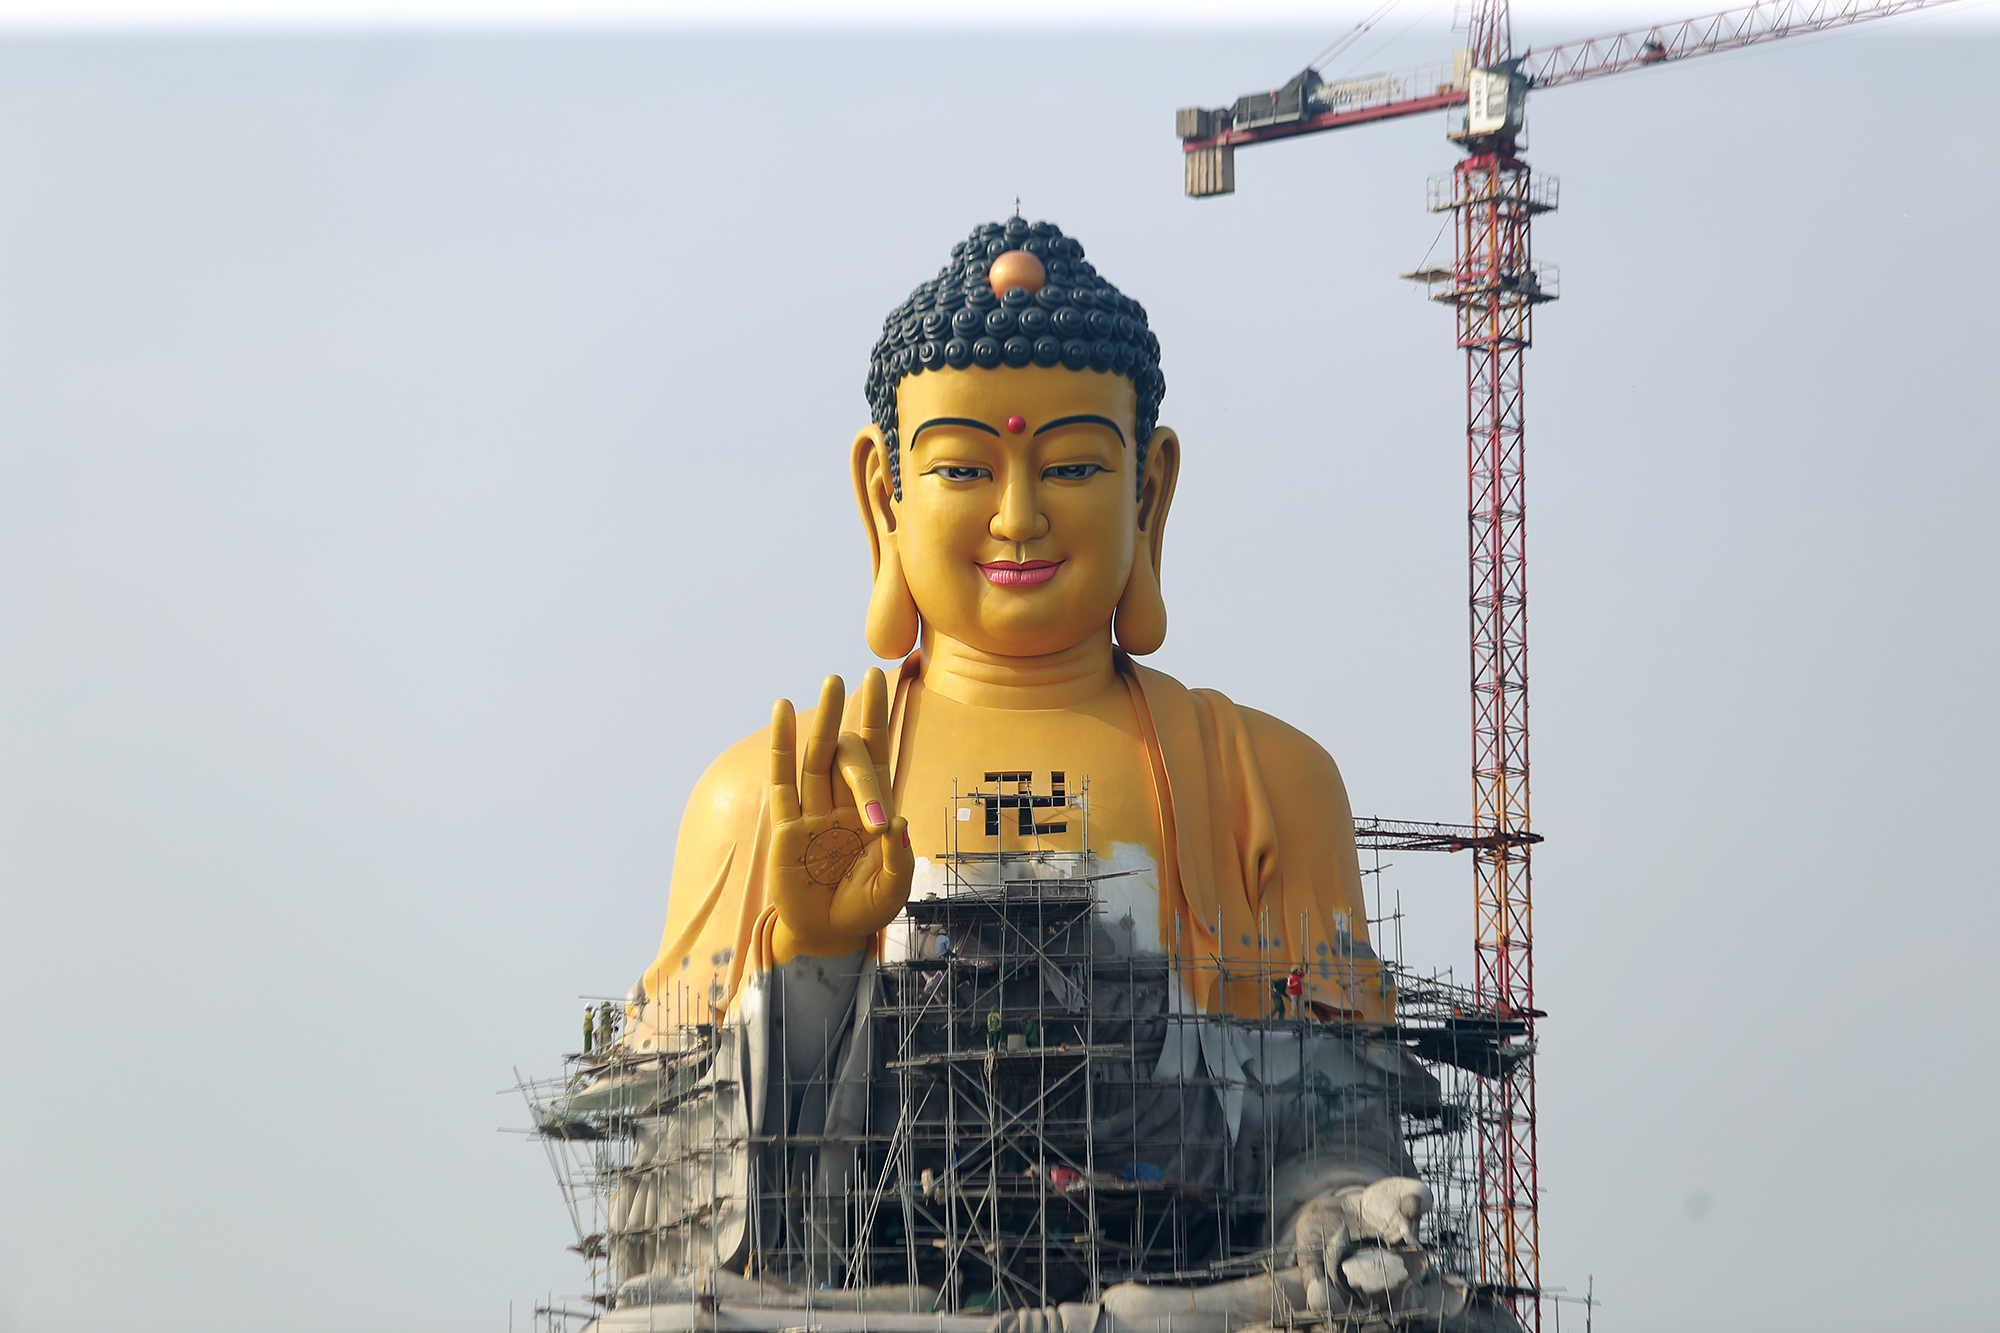 Một hình ảnh tượng Phật A Di Đà lớn nhất, cao khoảng 10 mét được tỉ mỉ chạm khắc từng chi tiết, tràn đầy năng lượng và trầm tĩnh sẽ mang đến cho bạn cảm giác kinh ngạc và biết ơn về tài hoa và tâm huyết mà người nghệ nhân đã đổ vào tác phẩm tuyệt vời này.